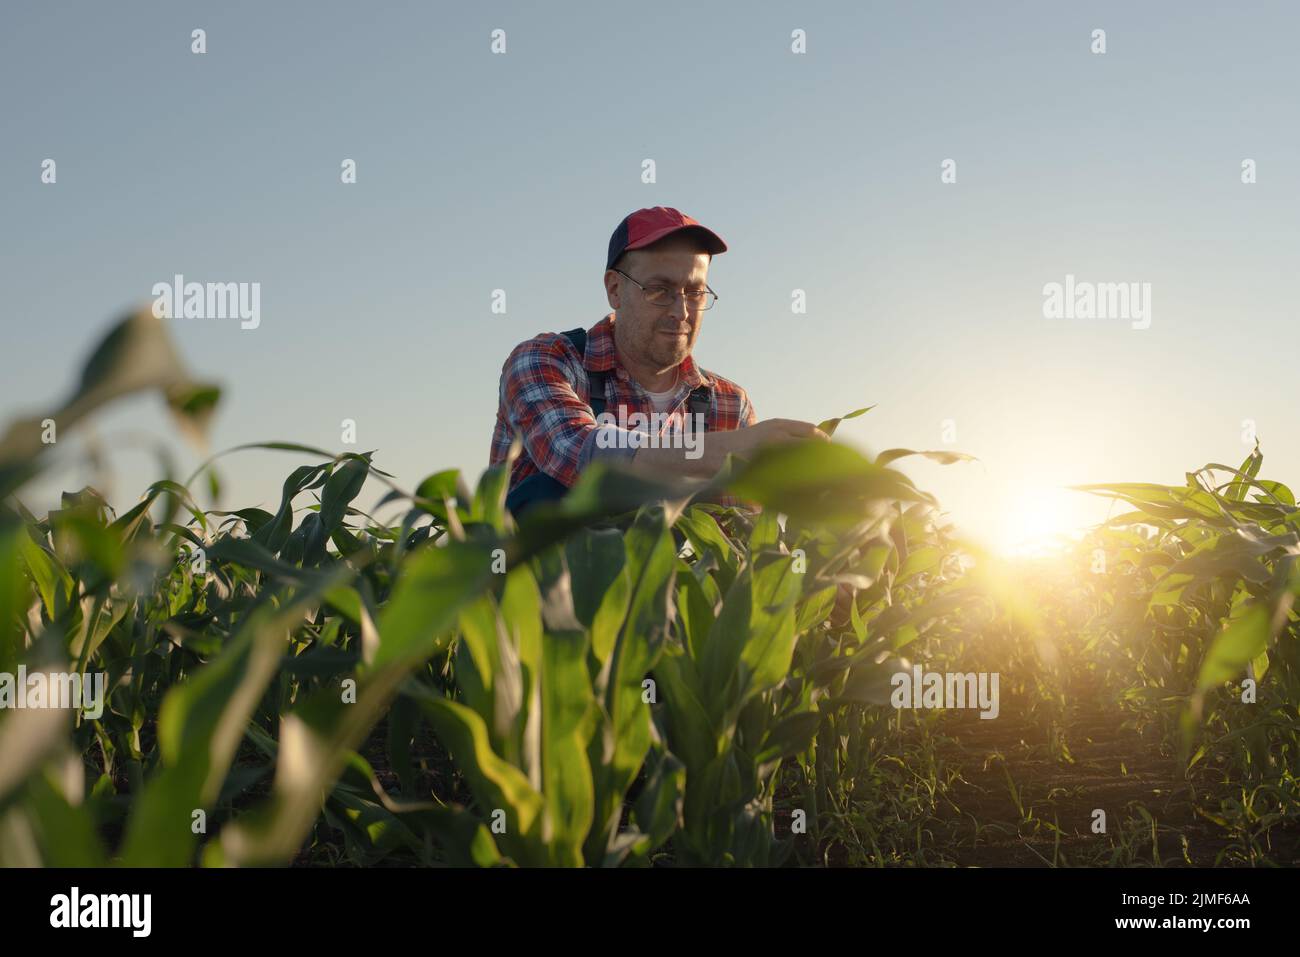 Der kaukasische Maisbauer im mittleren Alter kniete zur Inspektion von Maisstielen Stockfoto